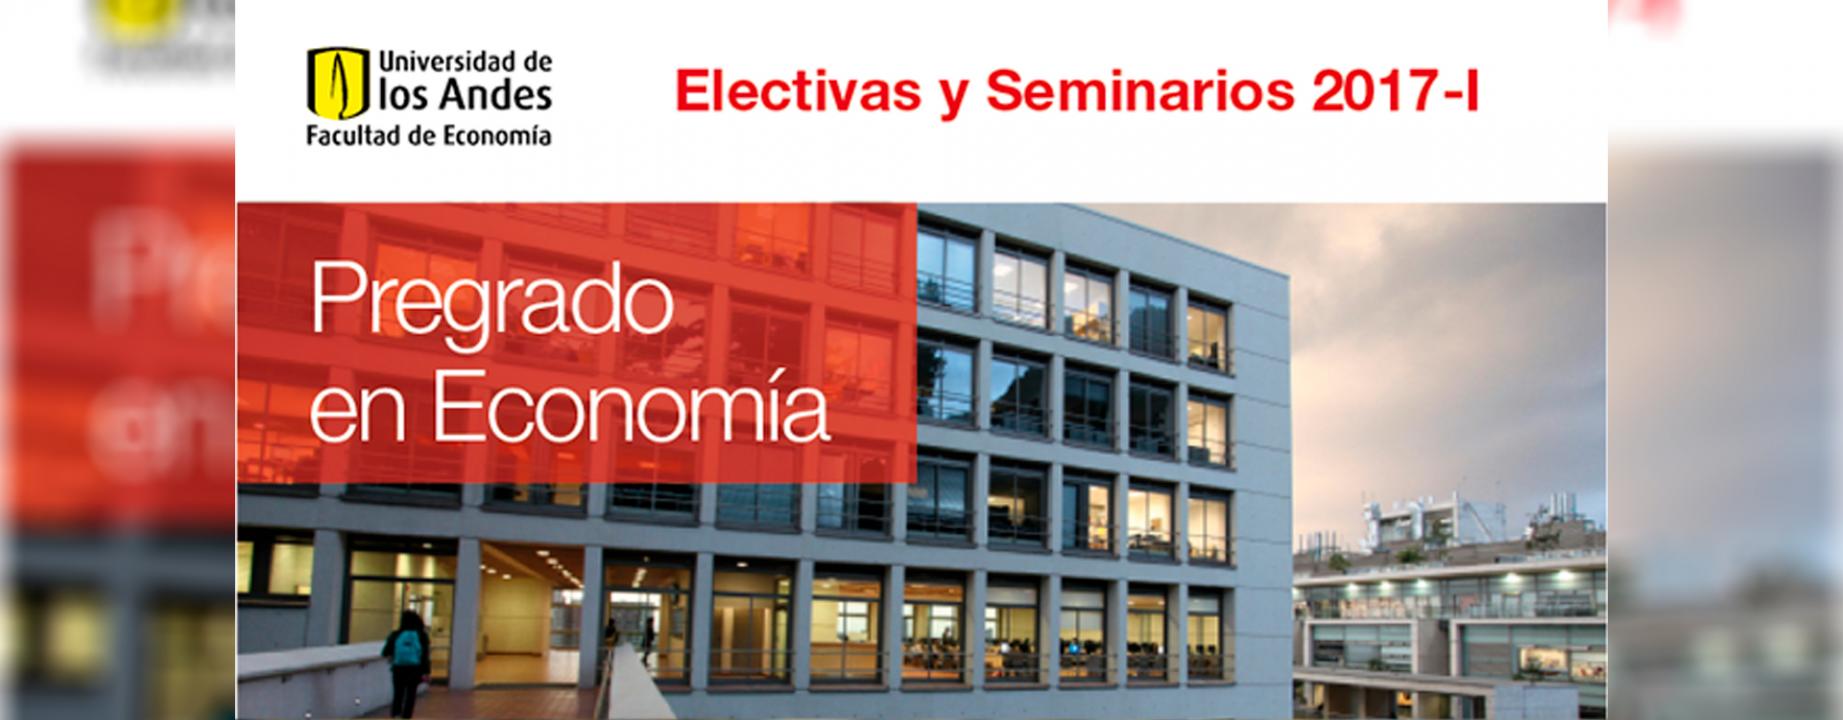 electivas-seminarios-2017-i-banner